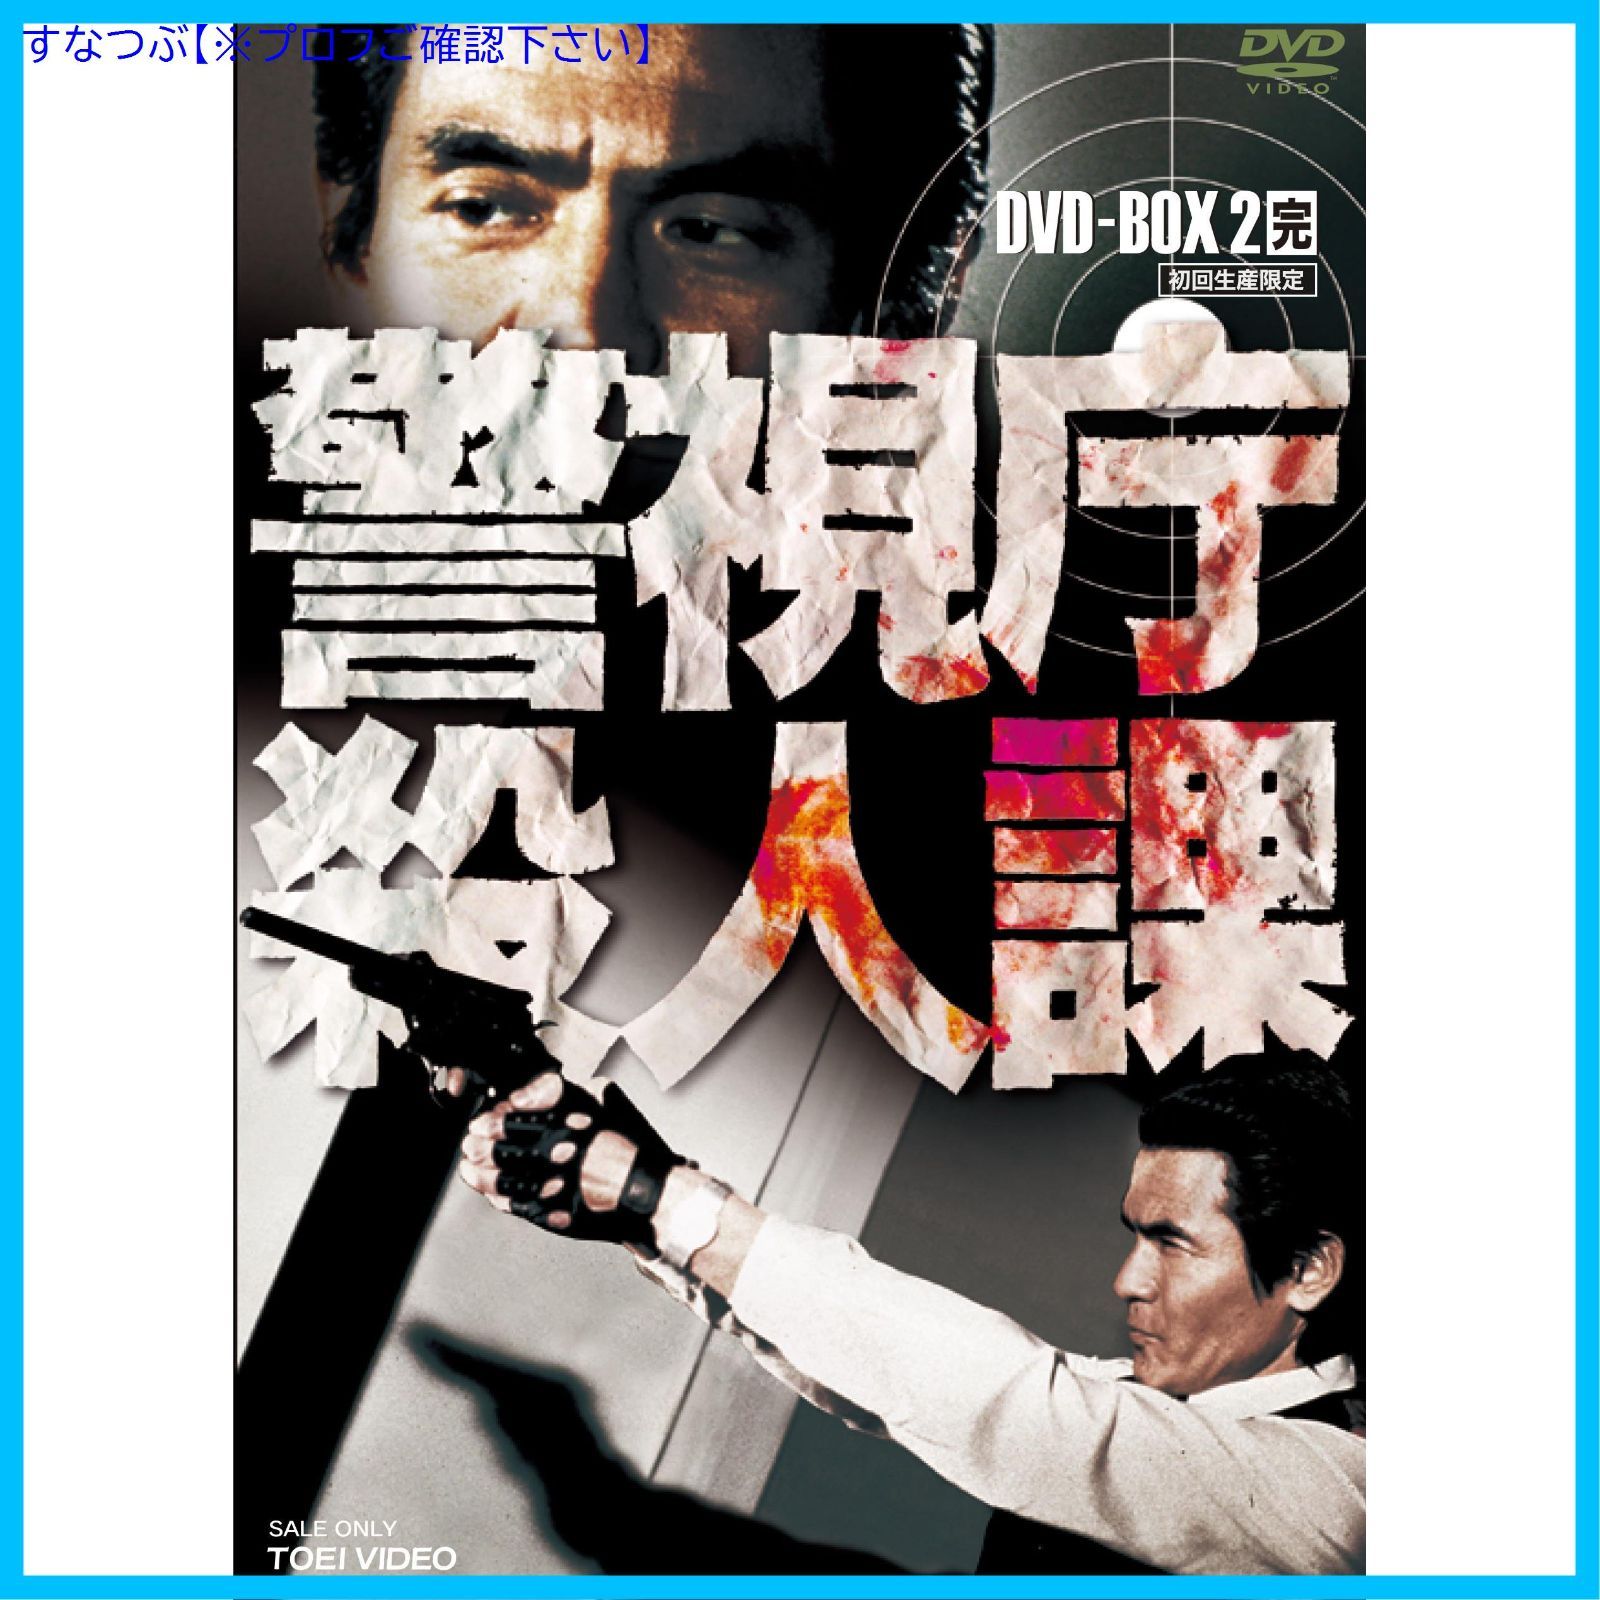 【新品未開封】警視庁殺人課 DVD-BOX VOL.2(初回生産限定) 菅原文太 (出演) 鶴田浩二 (出演) 形式: DVD